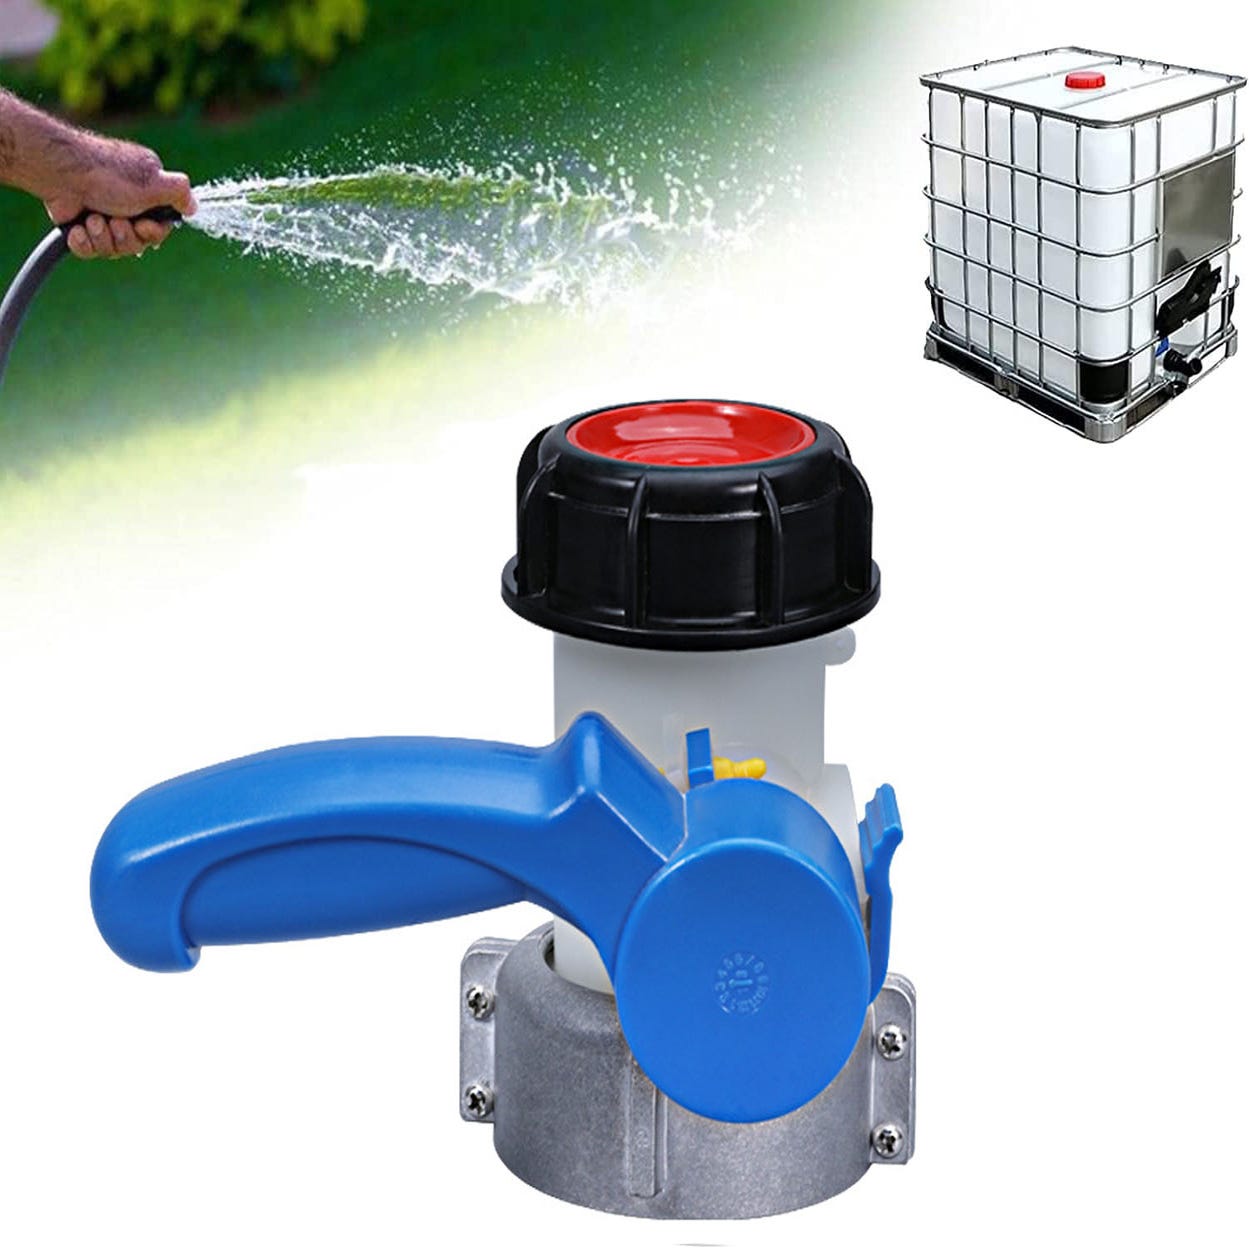 Adaptateur universel IBC, adaptateur de vanne d'arrêt IBC, adaptateur de  vanne papillon, pour réservoir d'eau de pluie, réservoir IBC (75 mm)